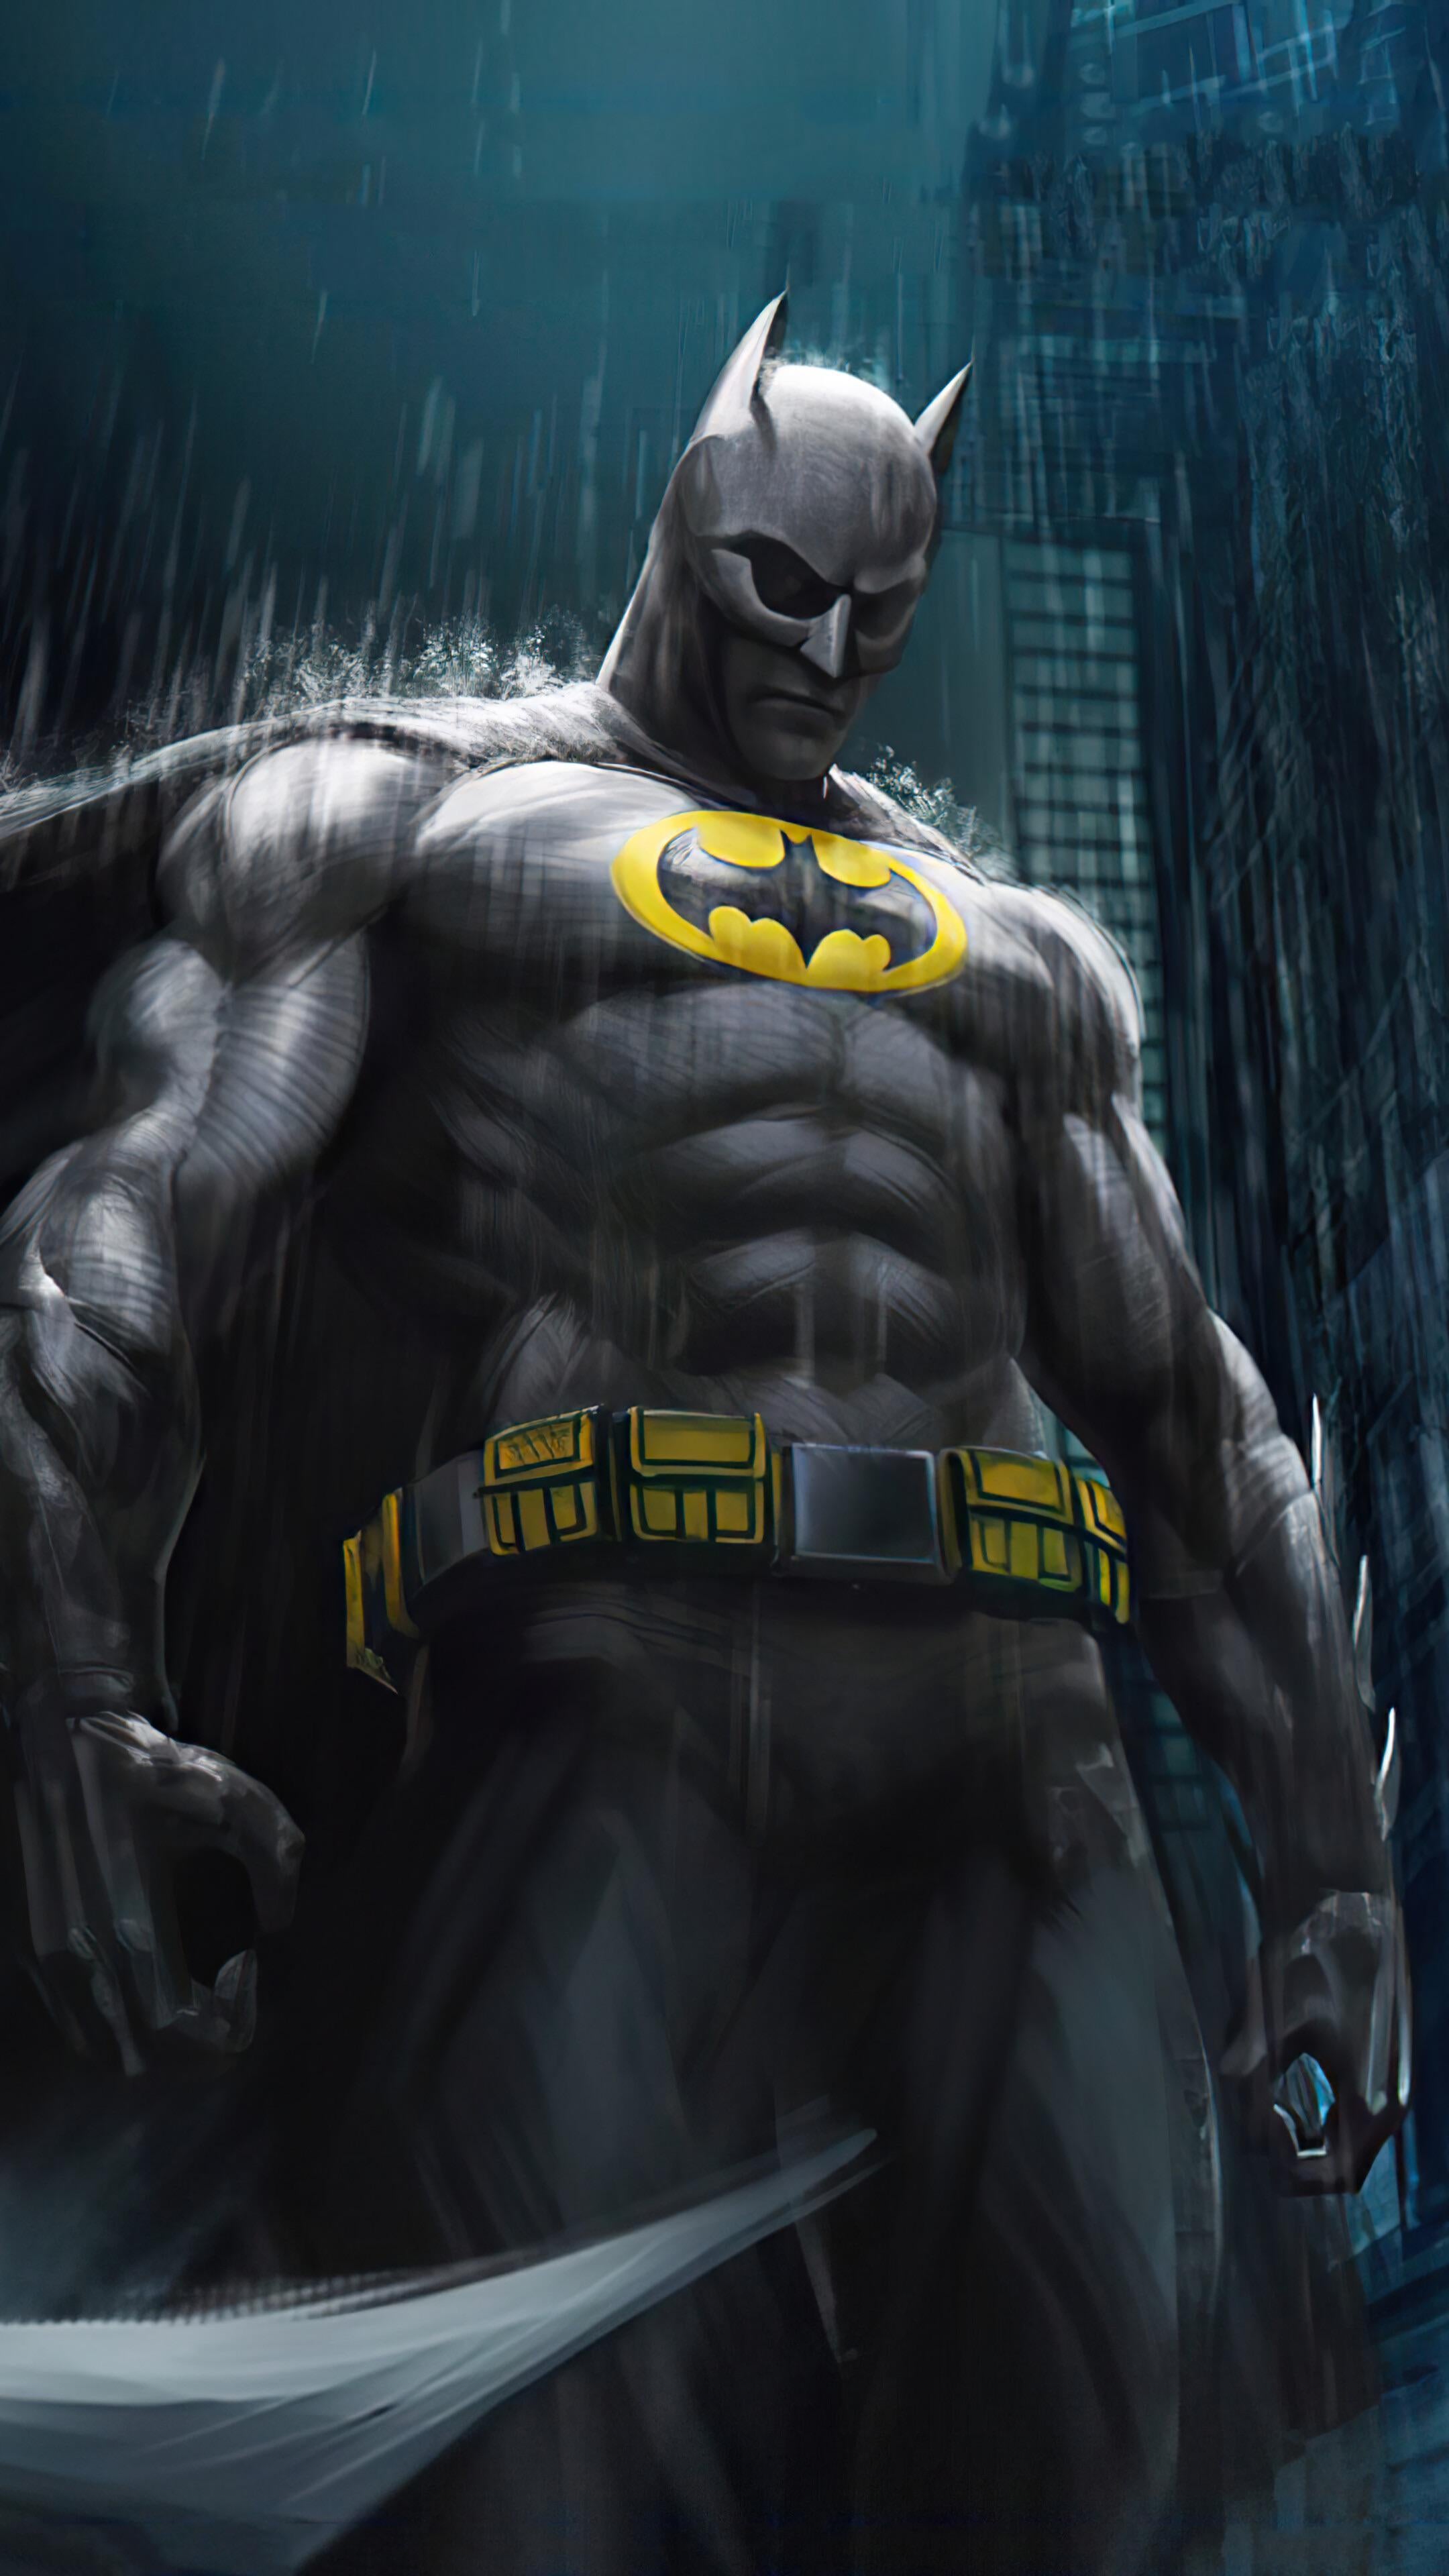 Fondos de Pantalla Batman, Superhéroe, dc Comics, Caricatura, Manga,  Imágenes y Fotos Gratis